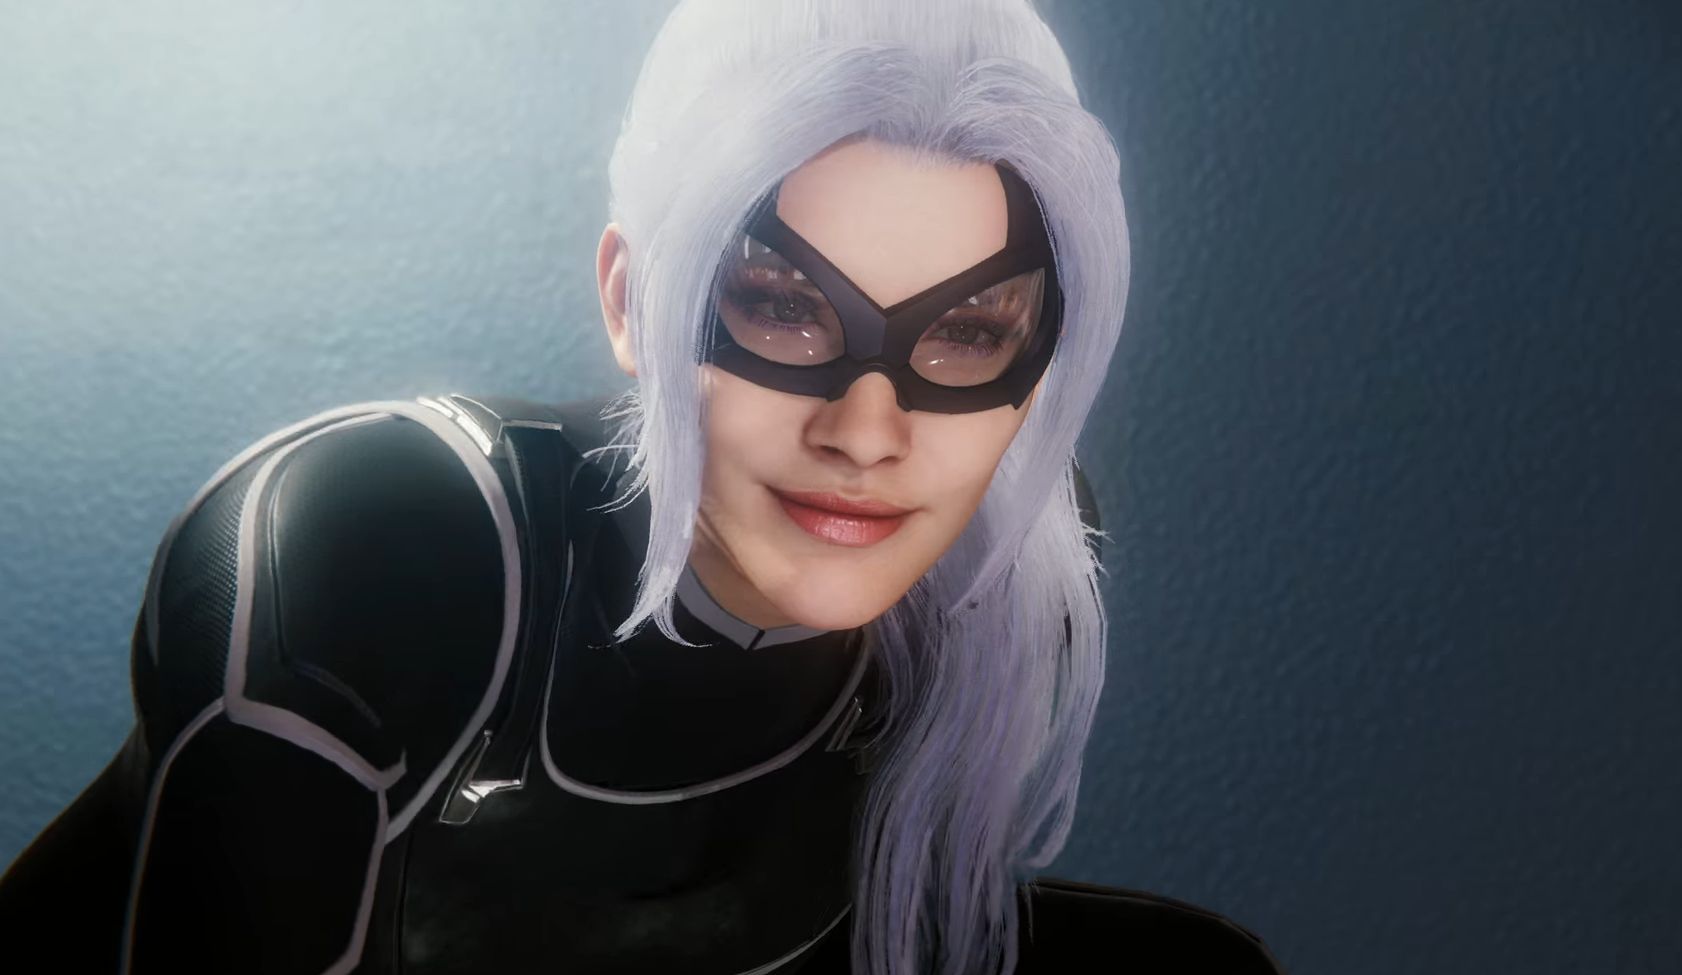 《漫威蜘蛛侠》首个DLC开场演示 蜘蛛侠被黑猫挑逗撩拨 - 84游戏网